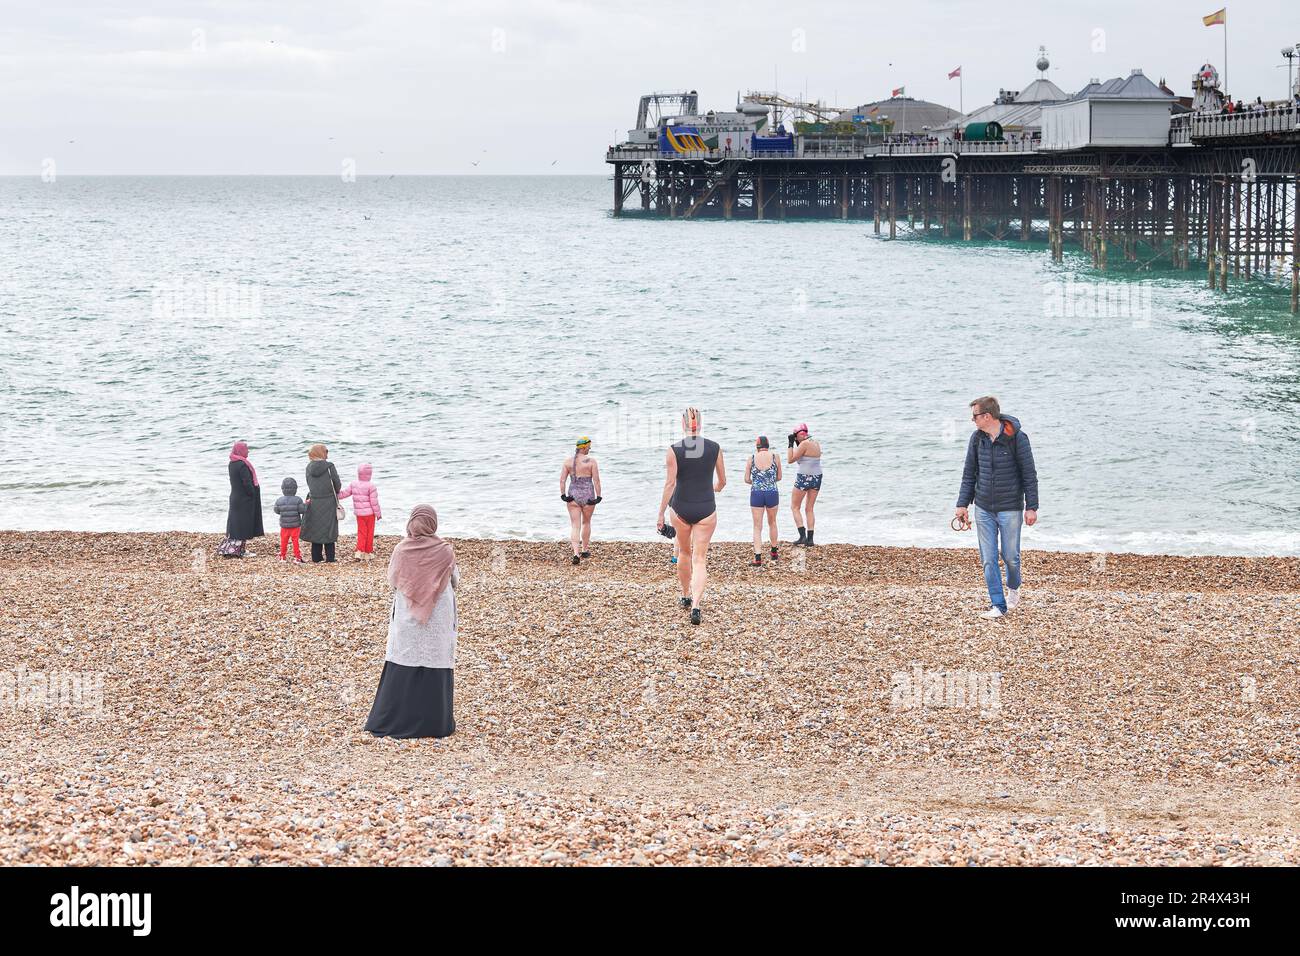 Un uomo guarda una donna in un costume da bagno in procinto di unirsi ad altre donne sulla riva presso il molo di Brighton, costa meridionale dell'Inghilterra, per una nuotata in una sorgente fredda Foto Stock